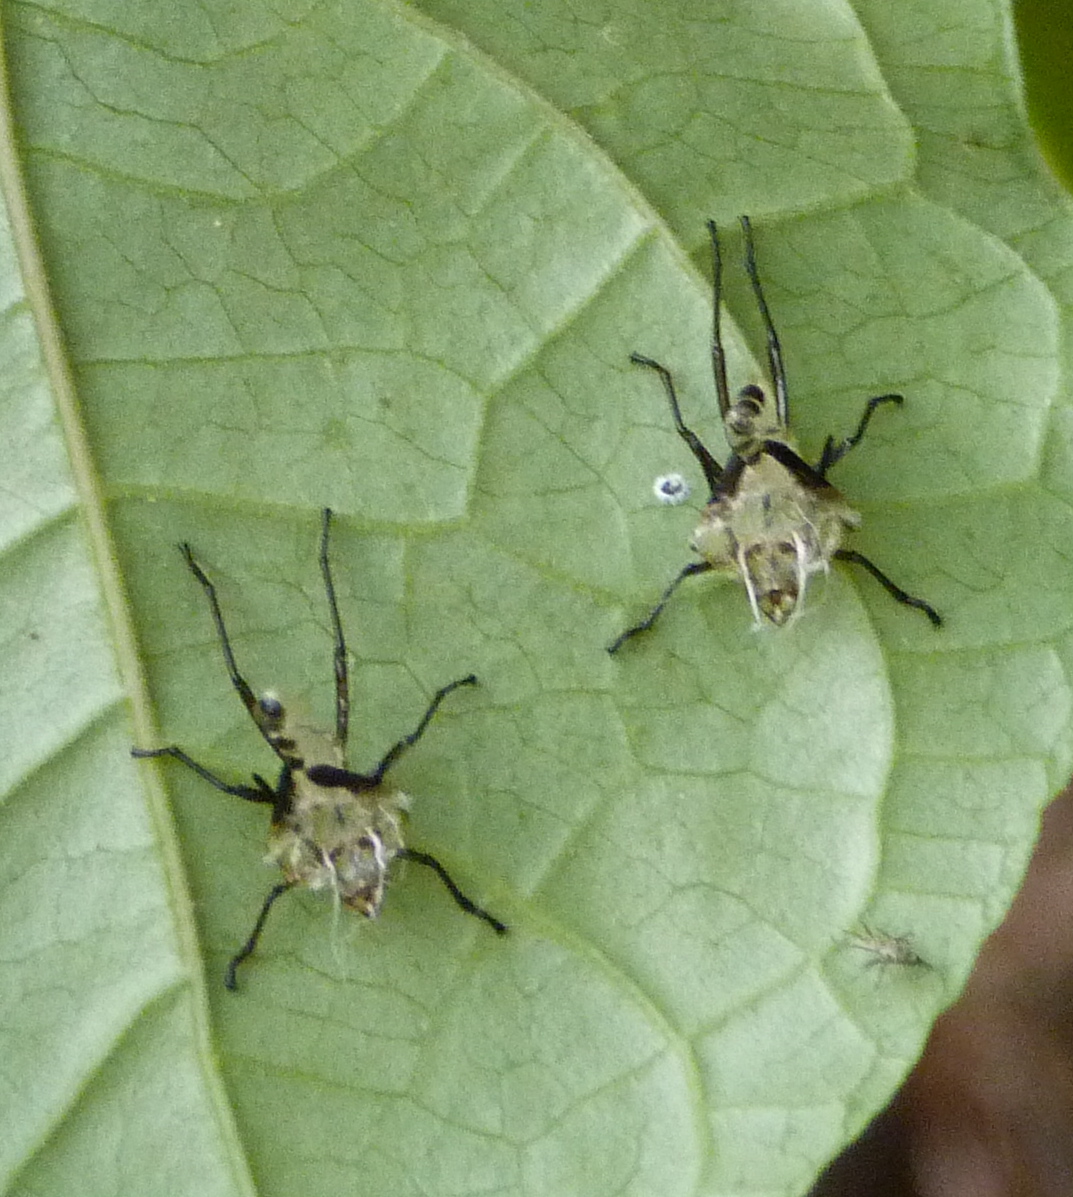 Large milkweed bug (shed exoskeletons)